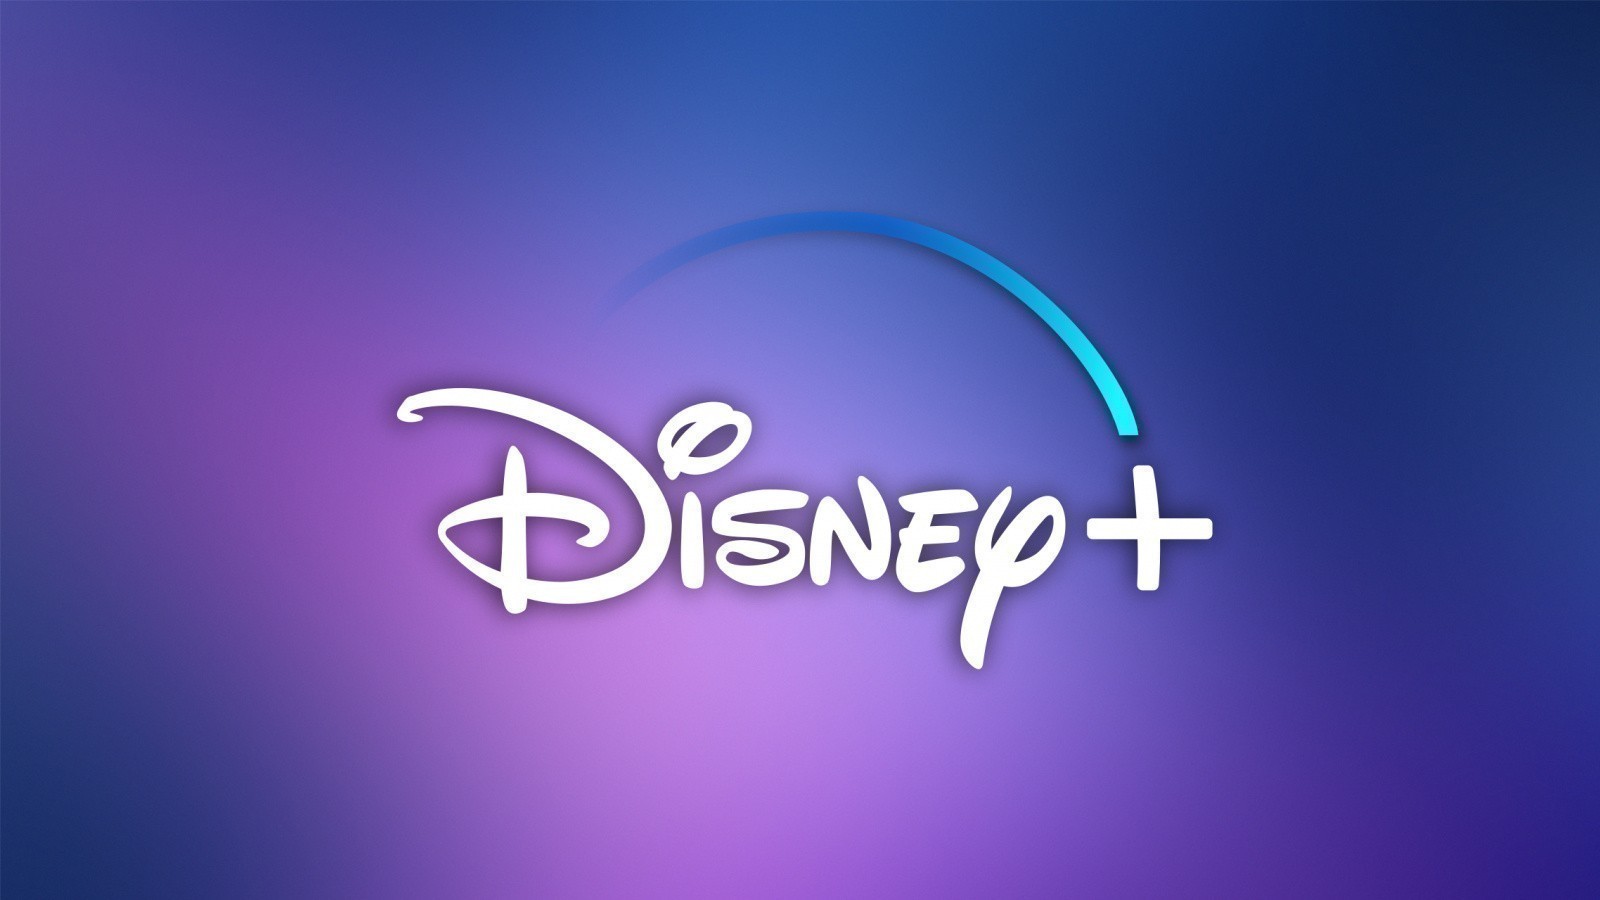 Disney+ w sierpniu z wielkim kinowym hitem. Do tego powrót uwielbianego serialu